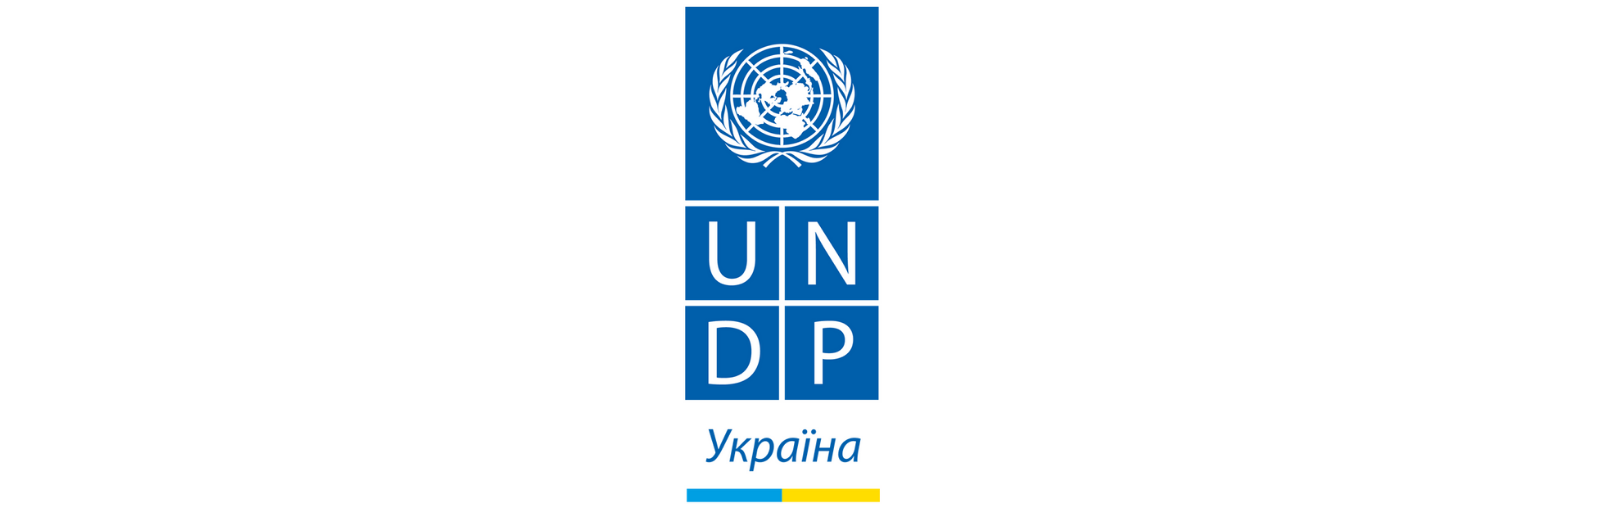 Програма розвитку ООН в Україні